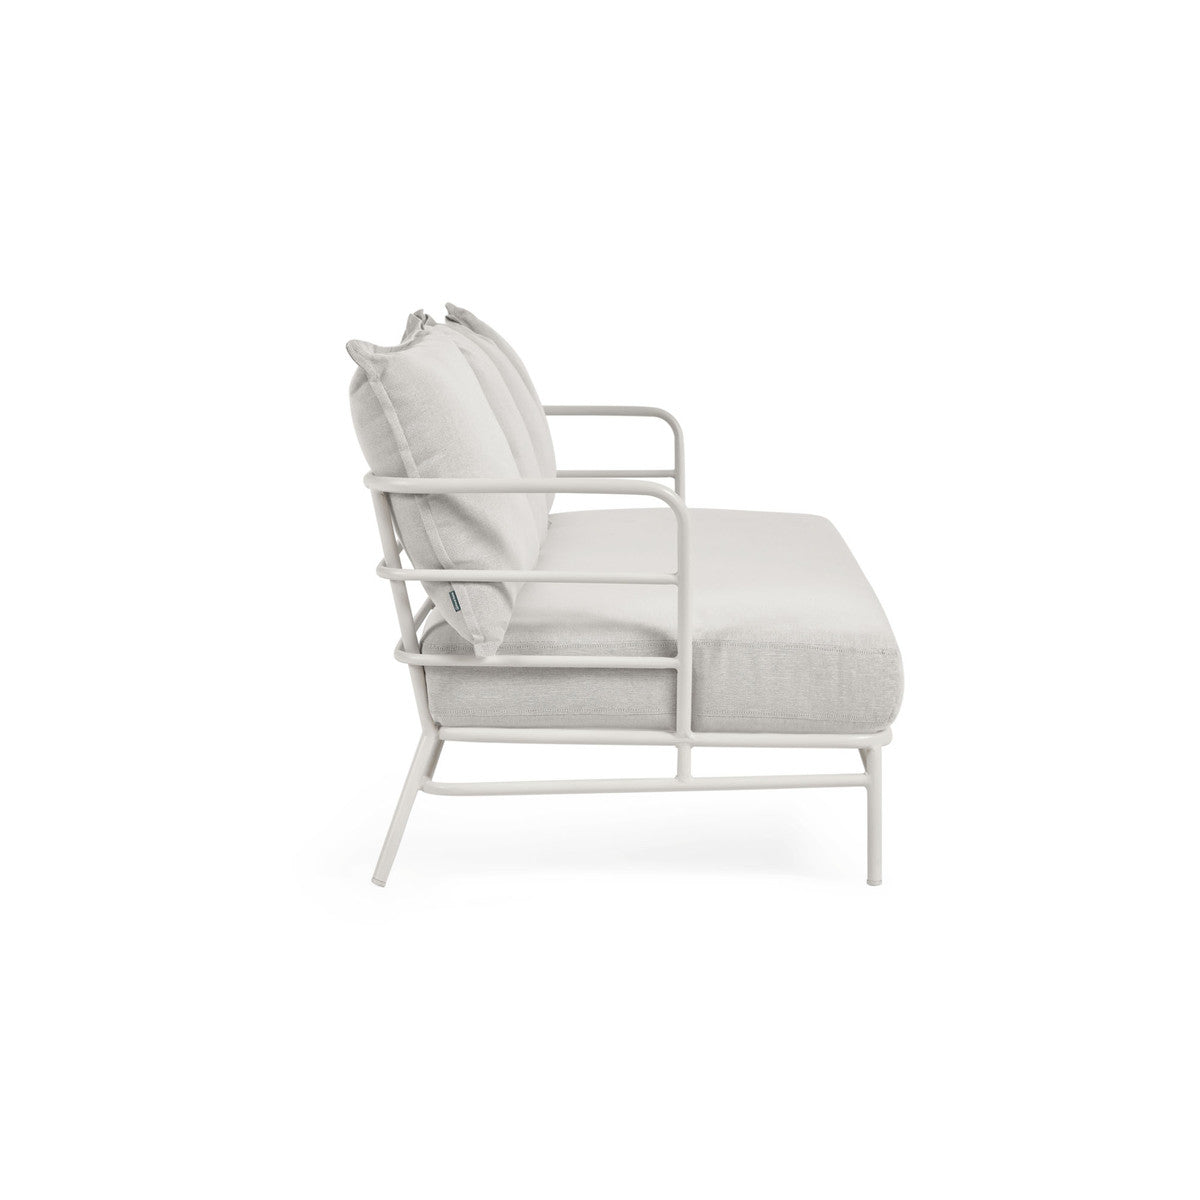 Mareluz Alfresco Seating - White